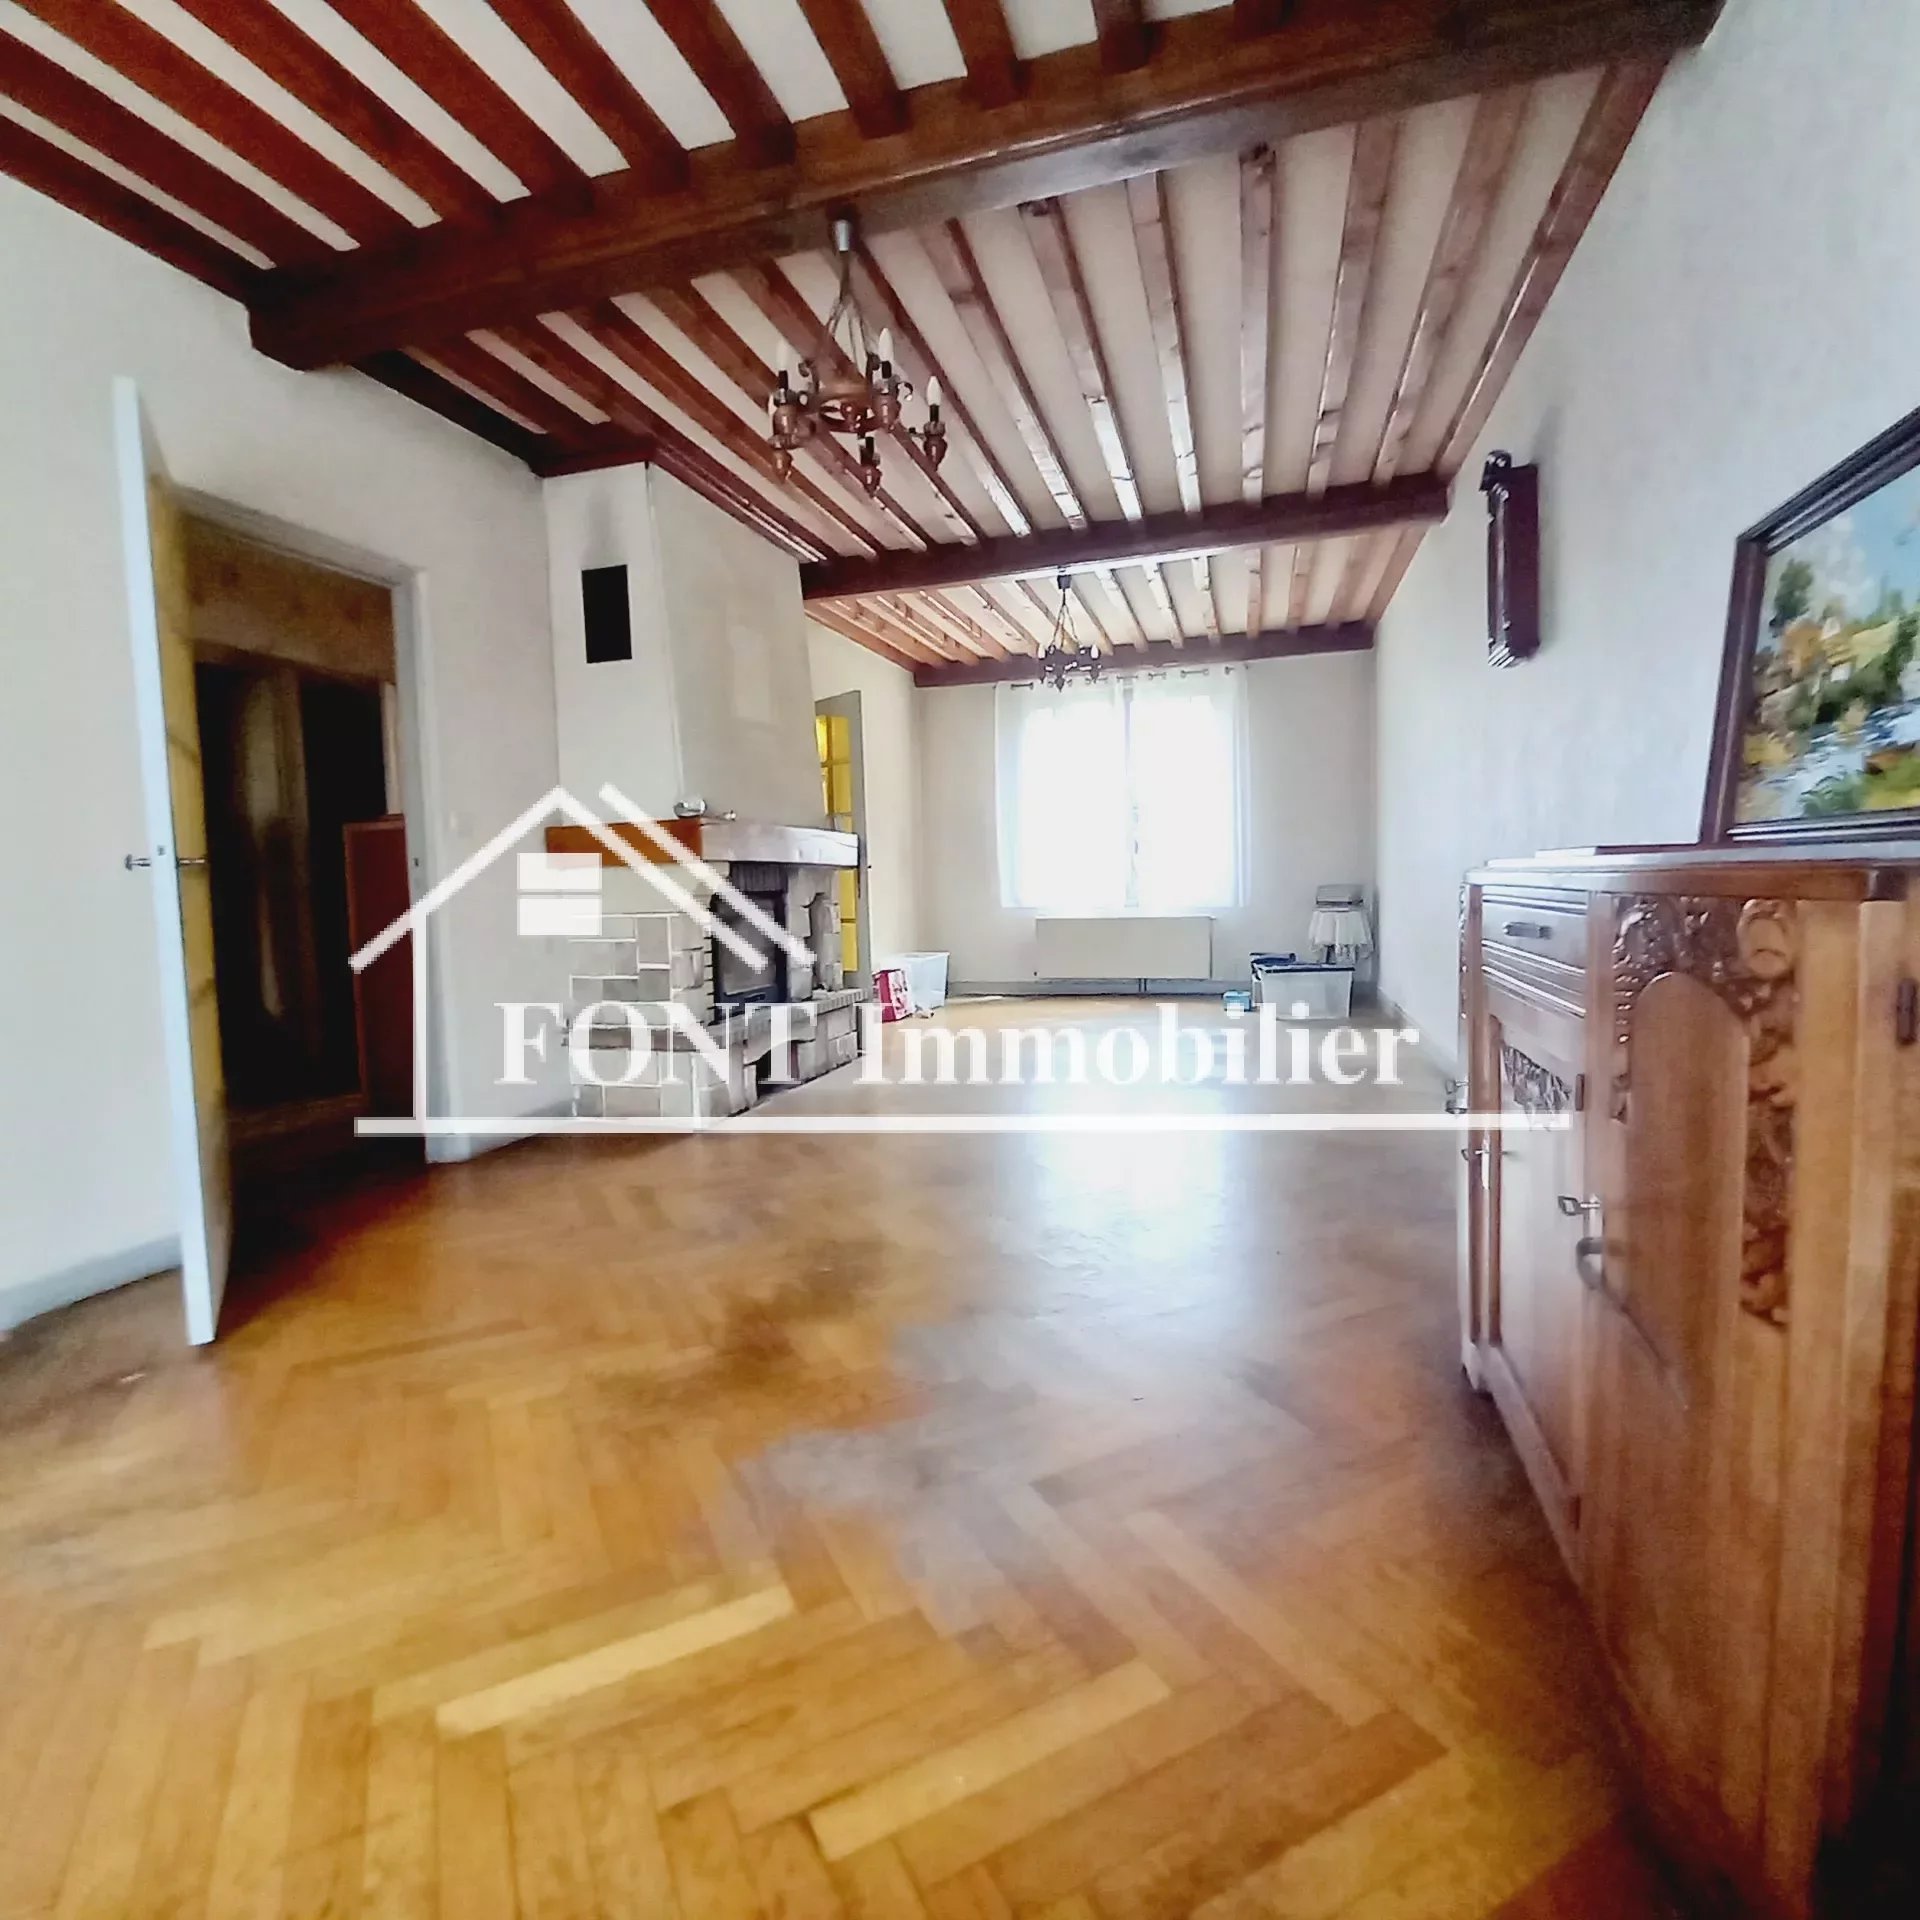 Vente Maison 106m² 5 Pièces à Saint-Chamond (42400) - Font Immobilier